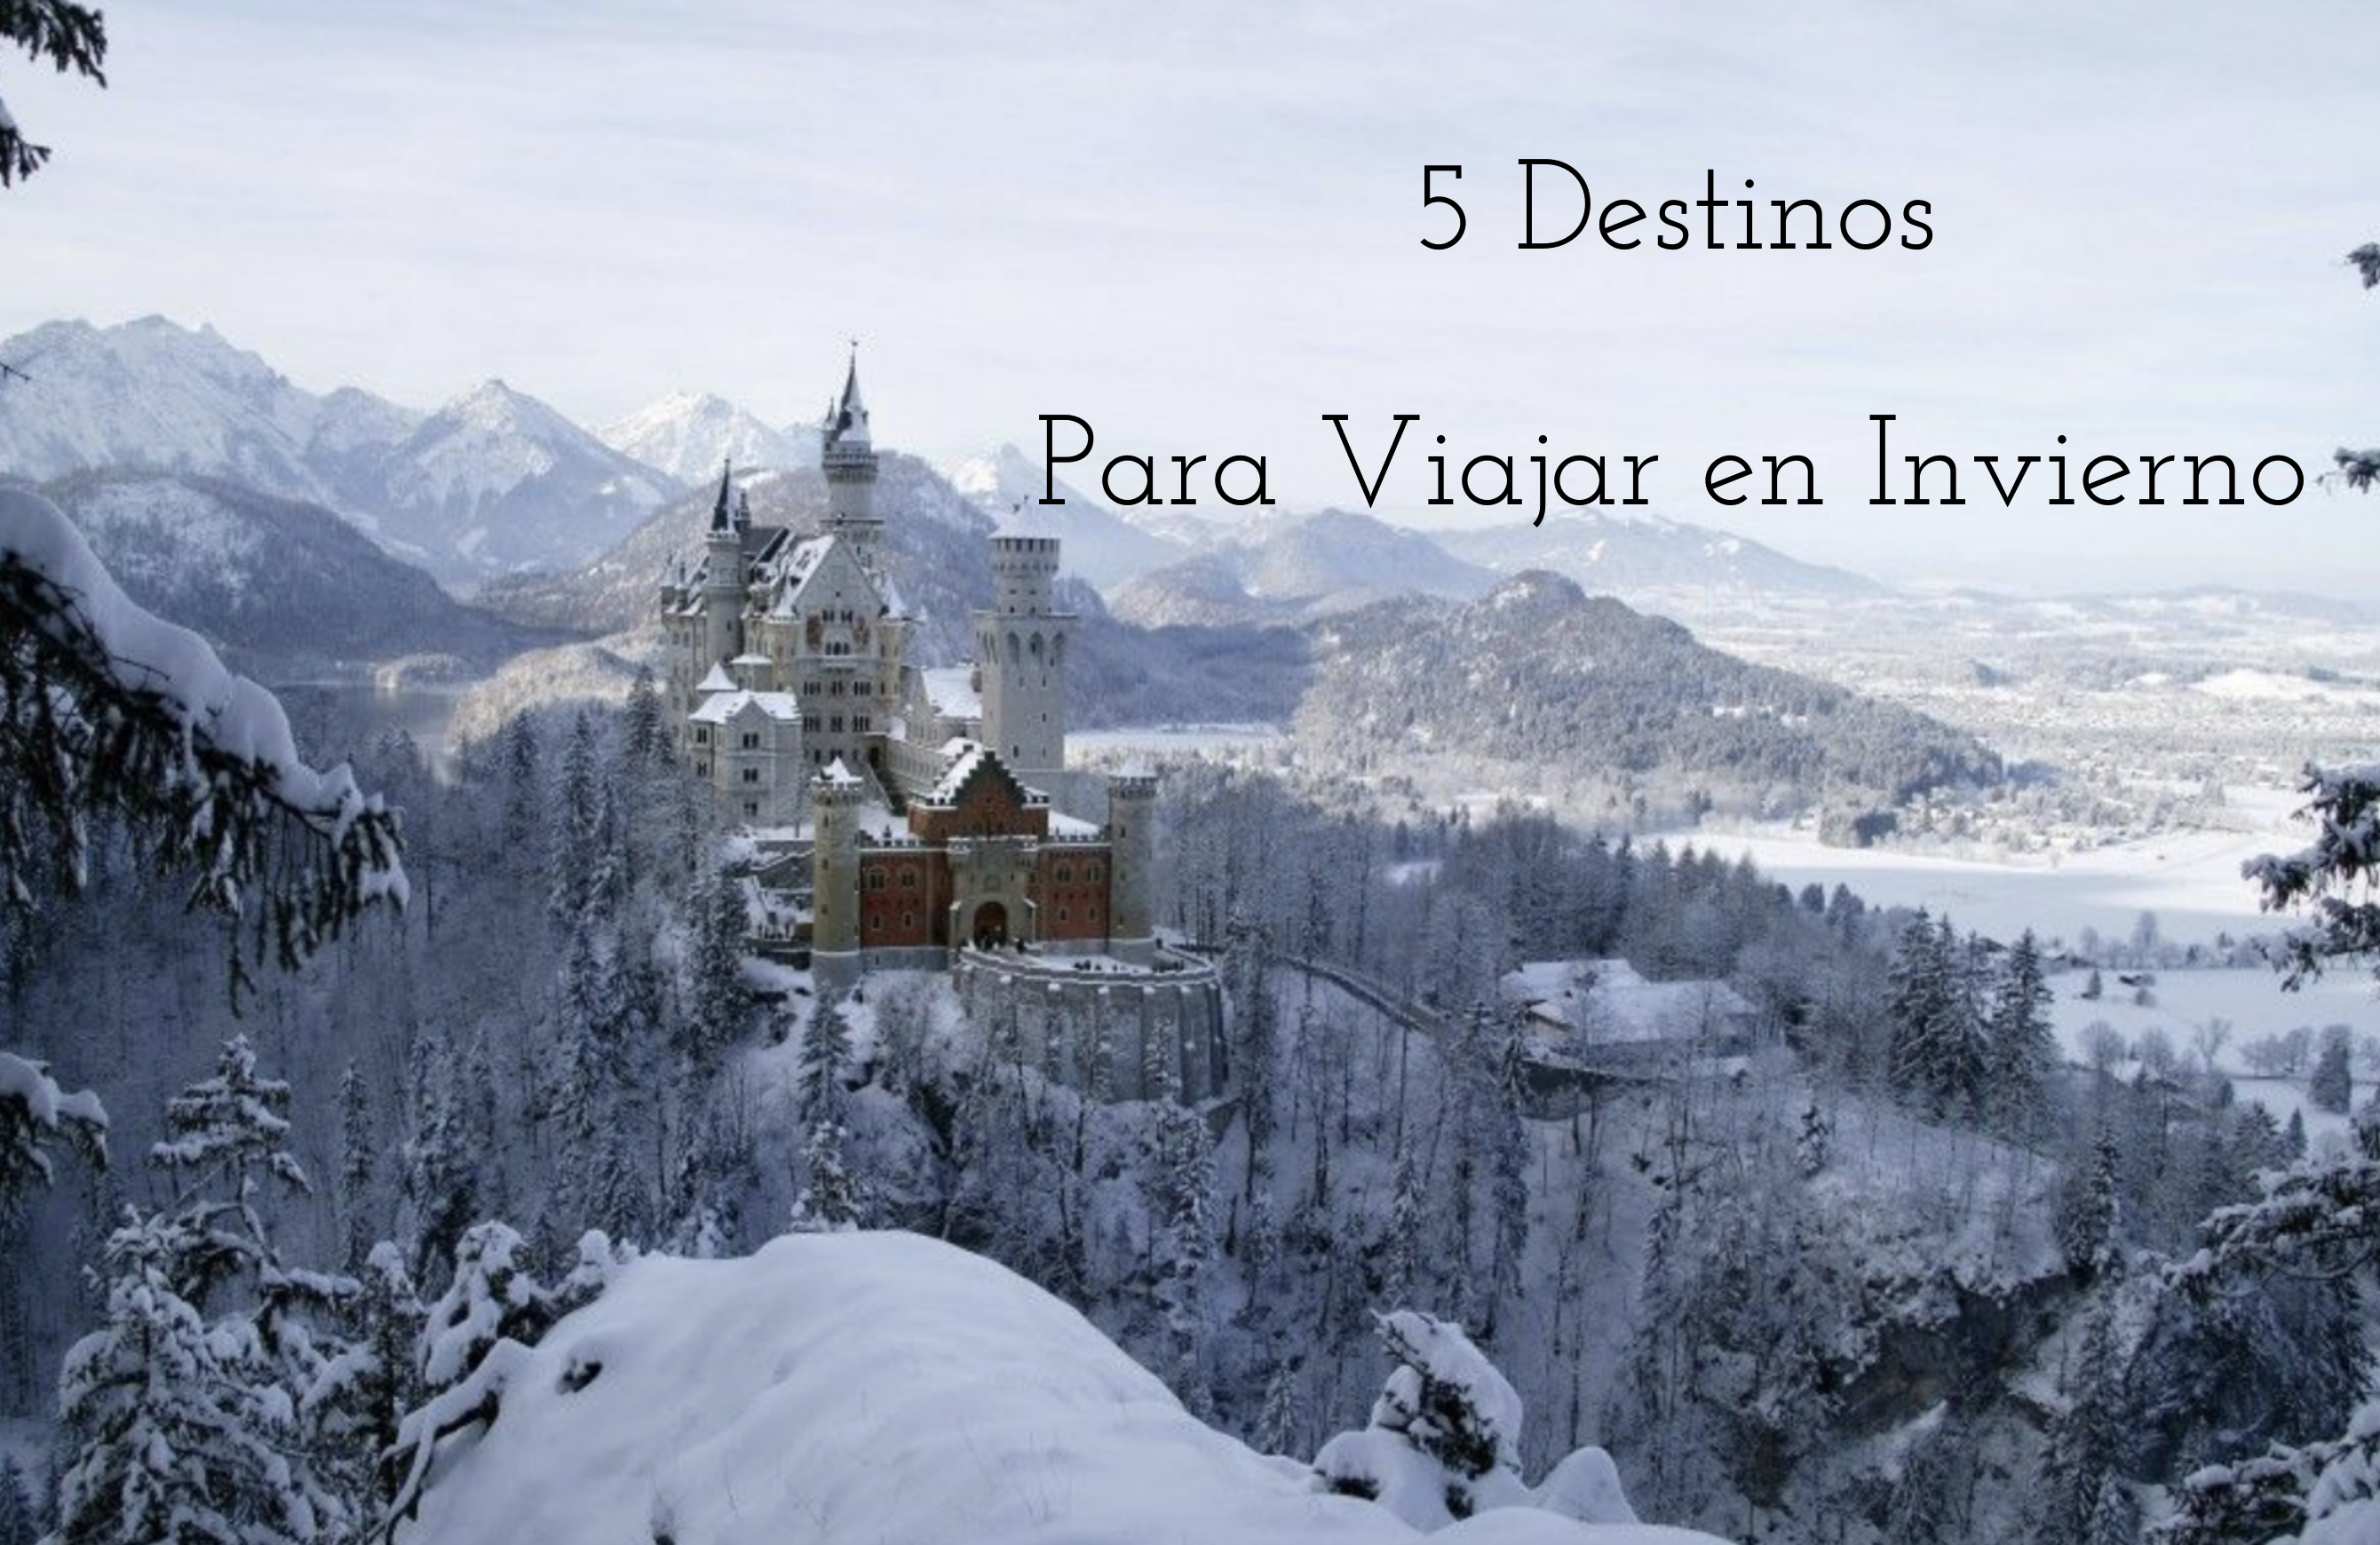 5 Destinos Para Viajar en Invierno